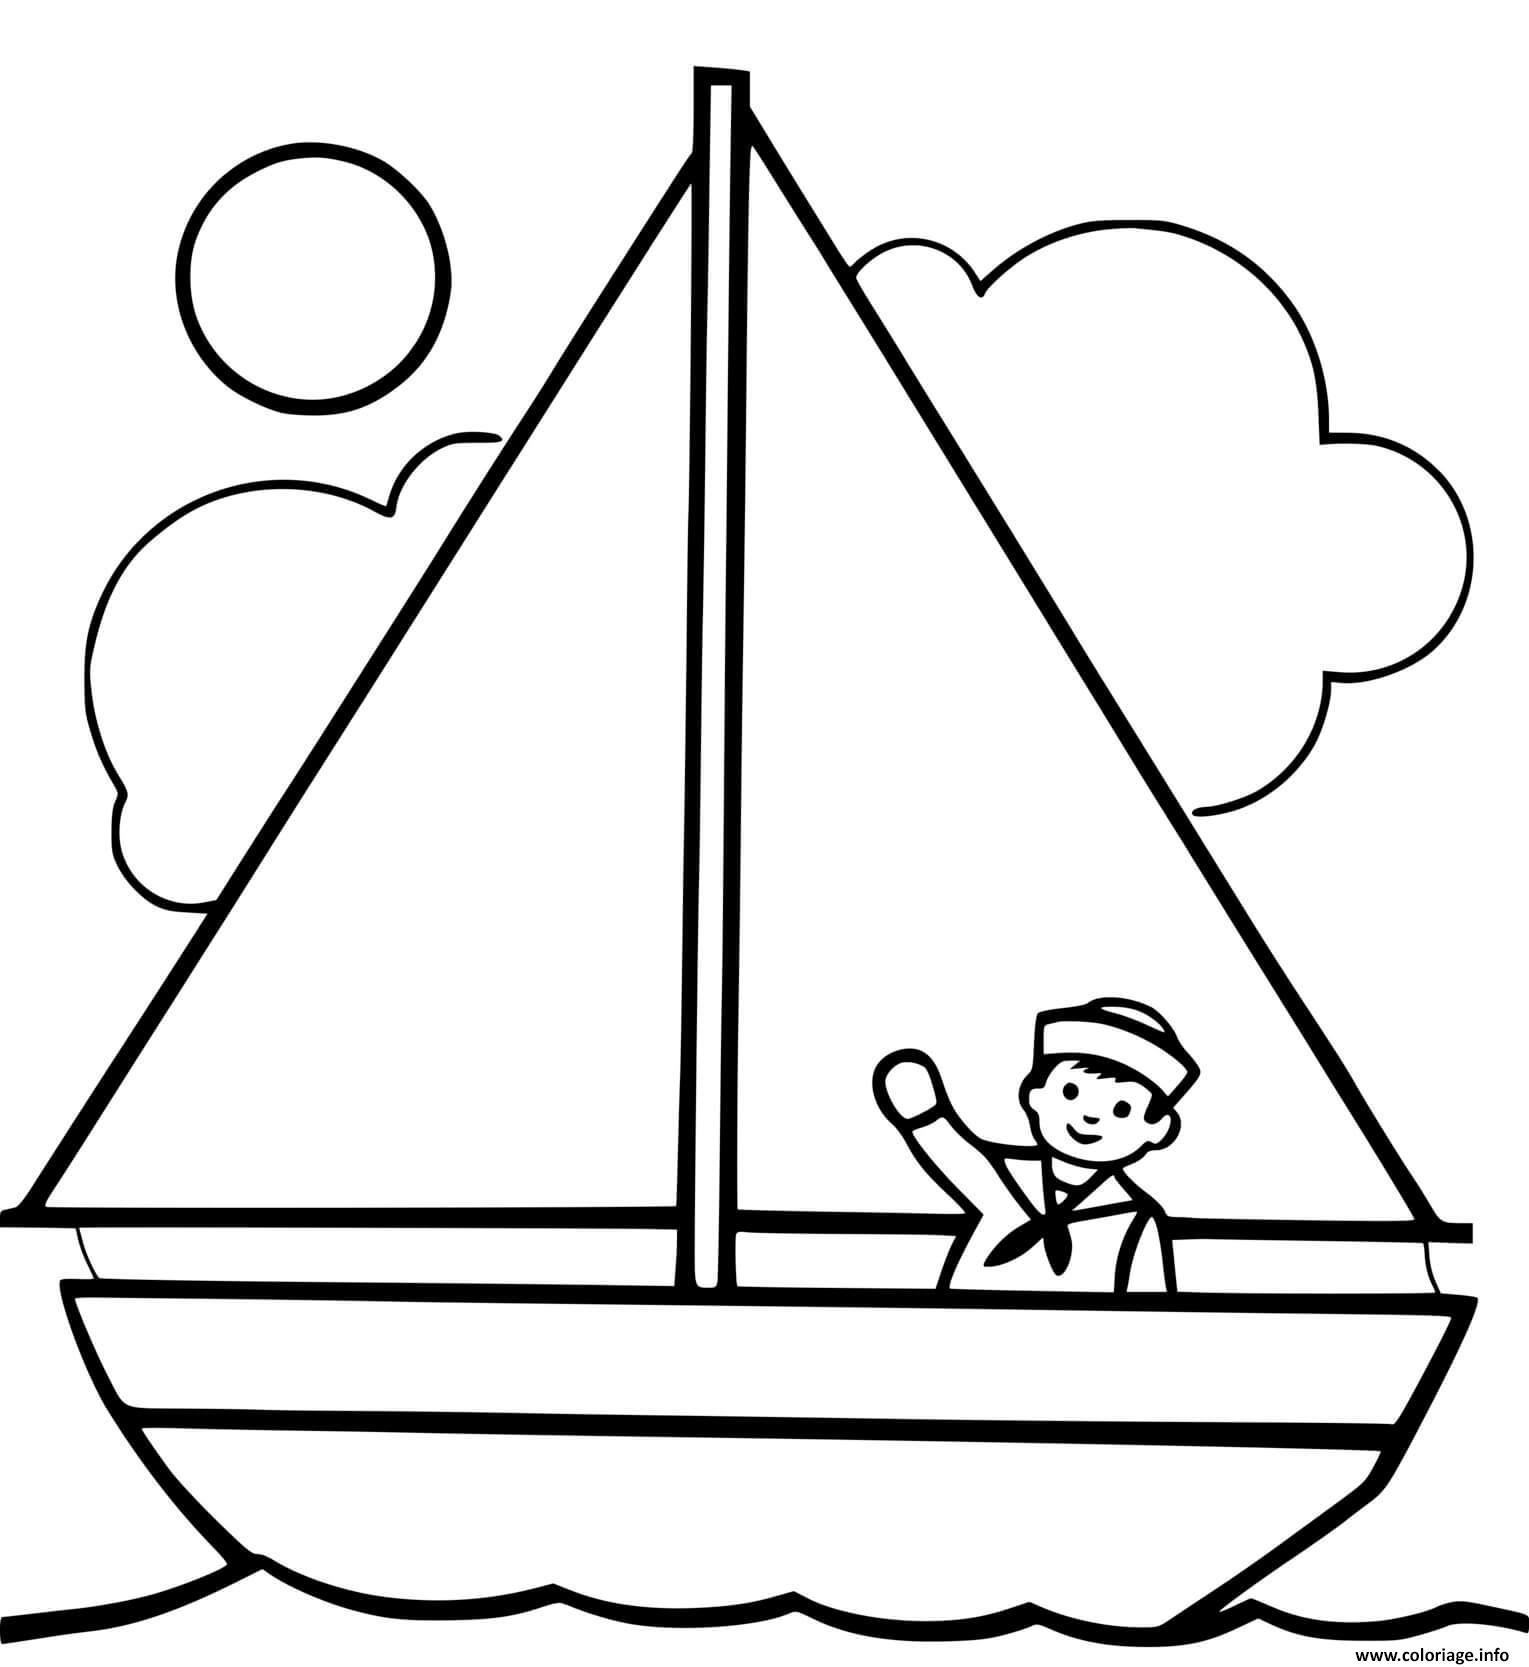 Tranh tô màu thuyền buồm đơn giản, đẹp